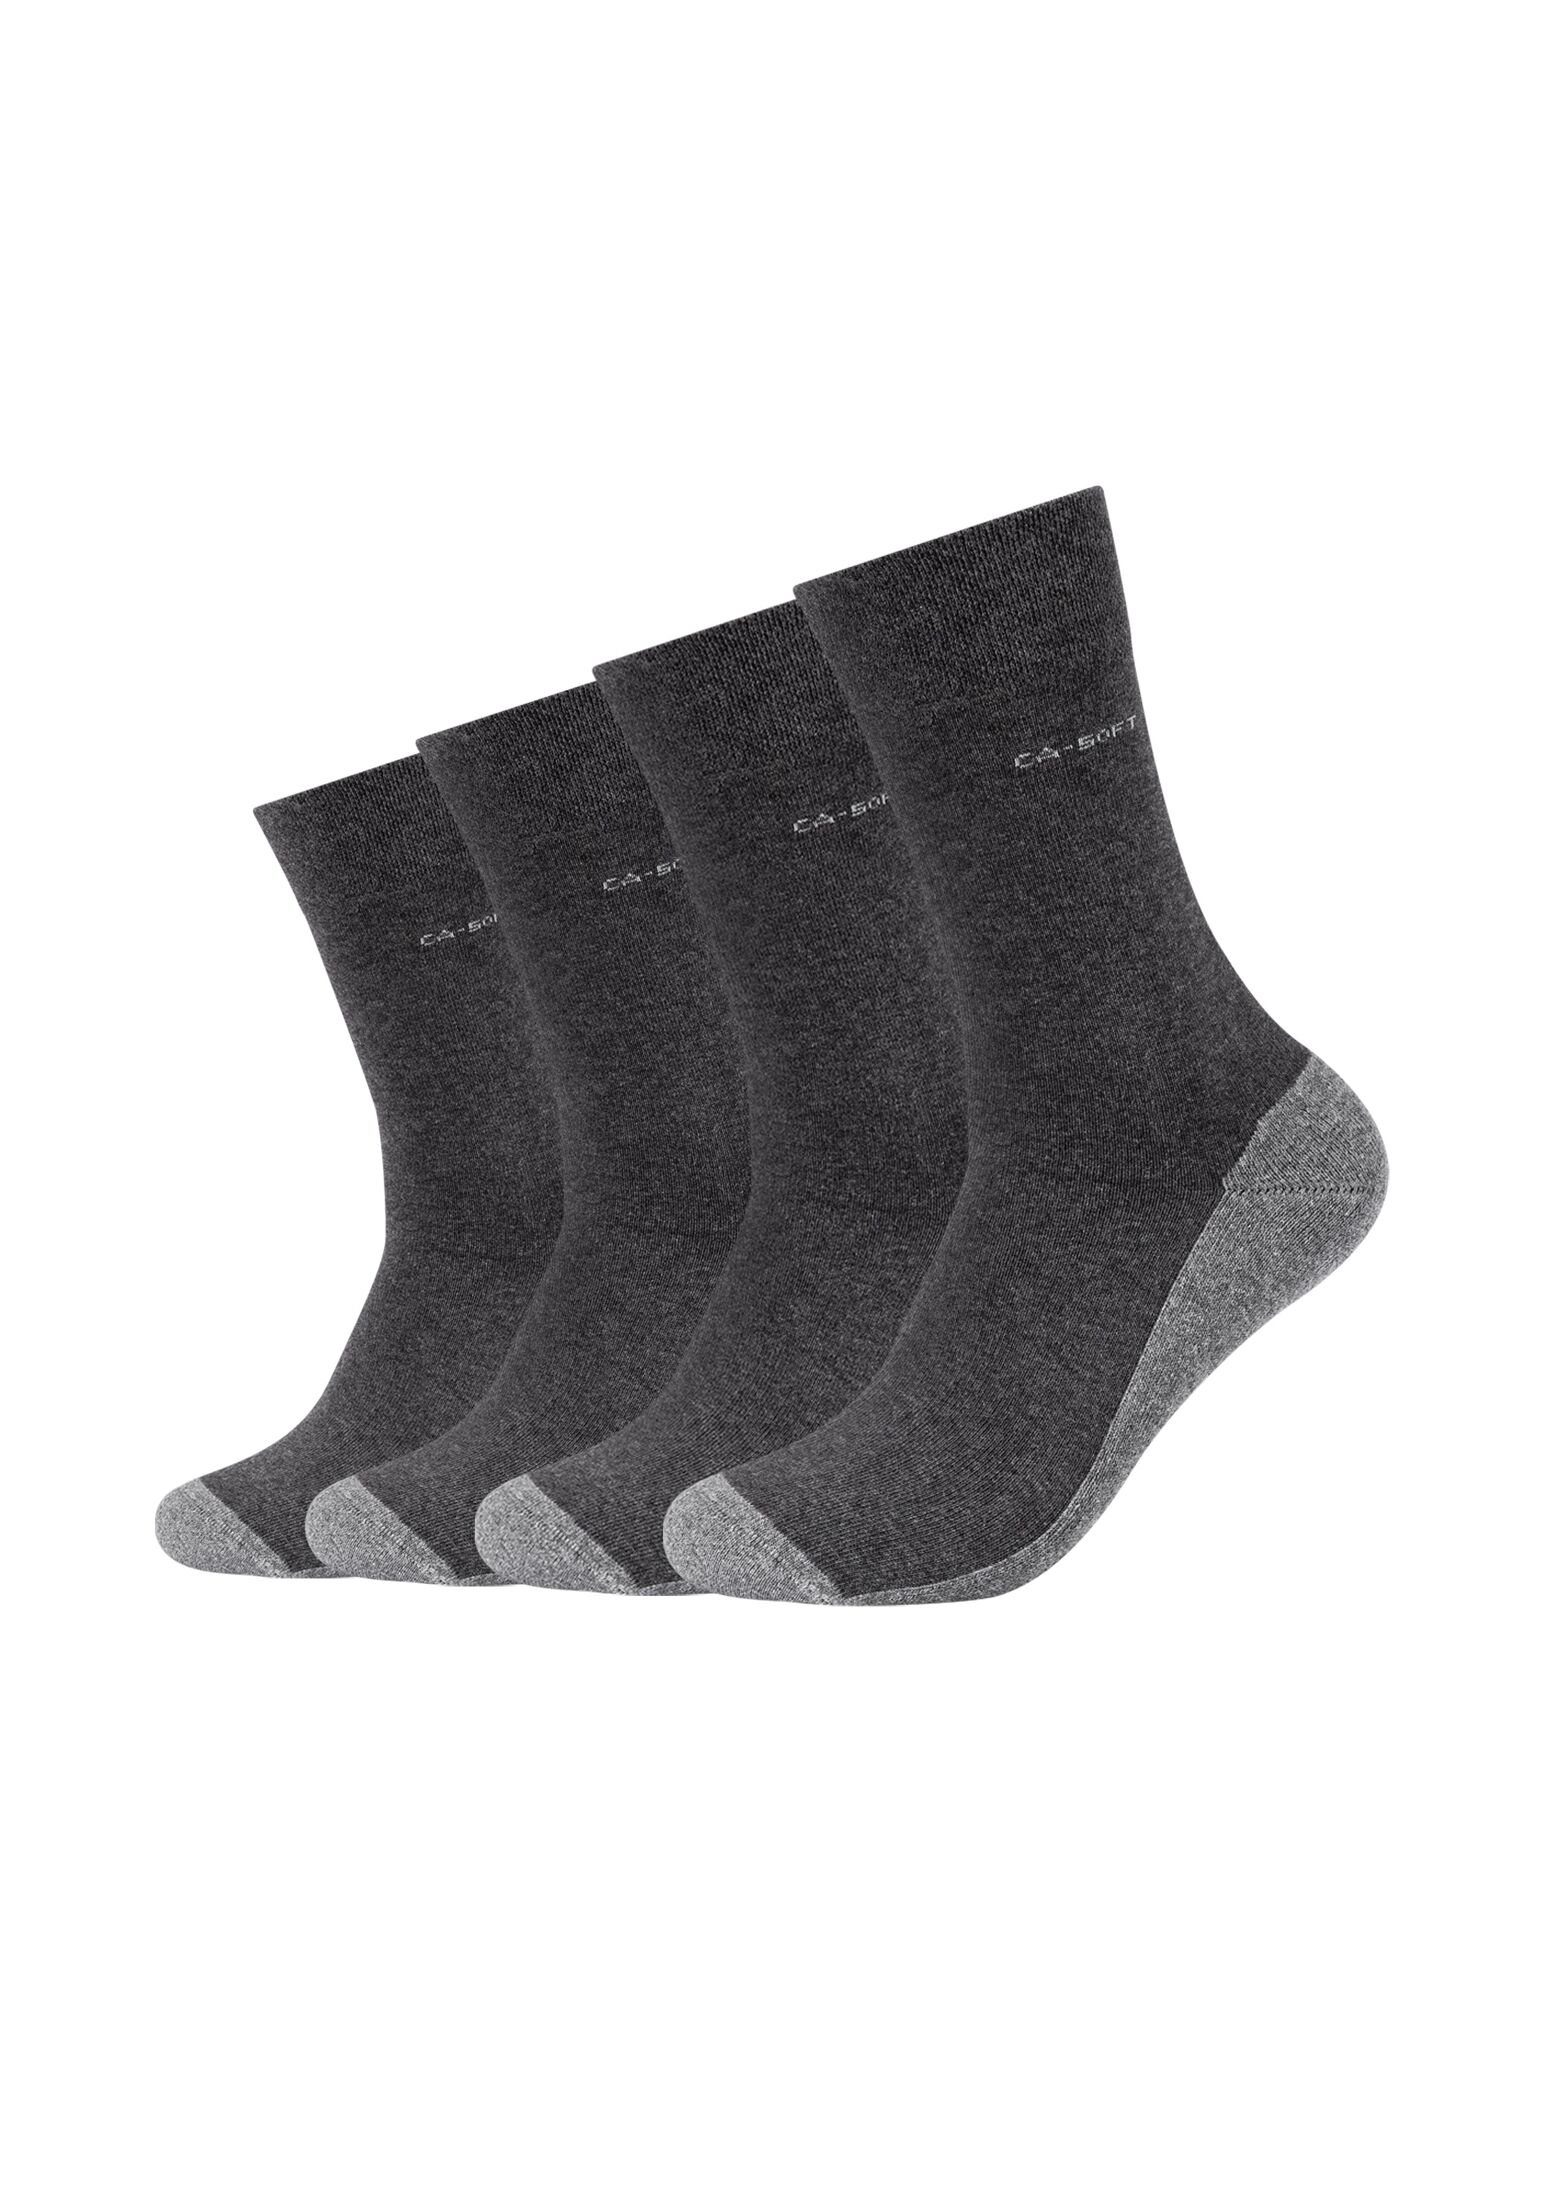 Camano Socken Socken Bambusfaser: für Weich Tragen Kühle und Pack, kühl angenehmes 4er